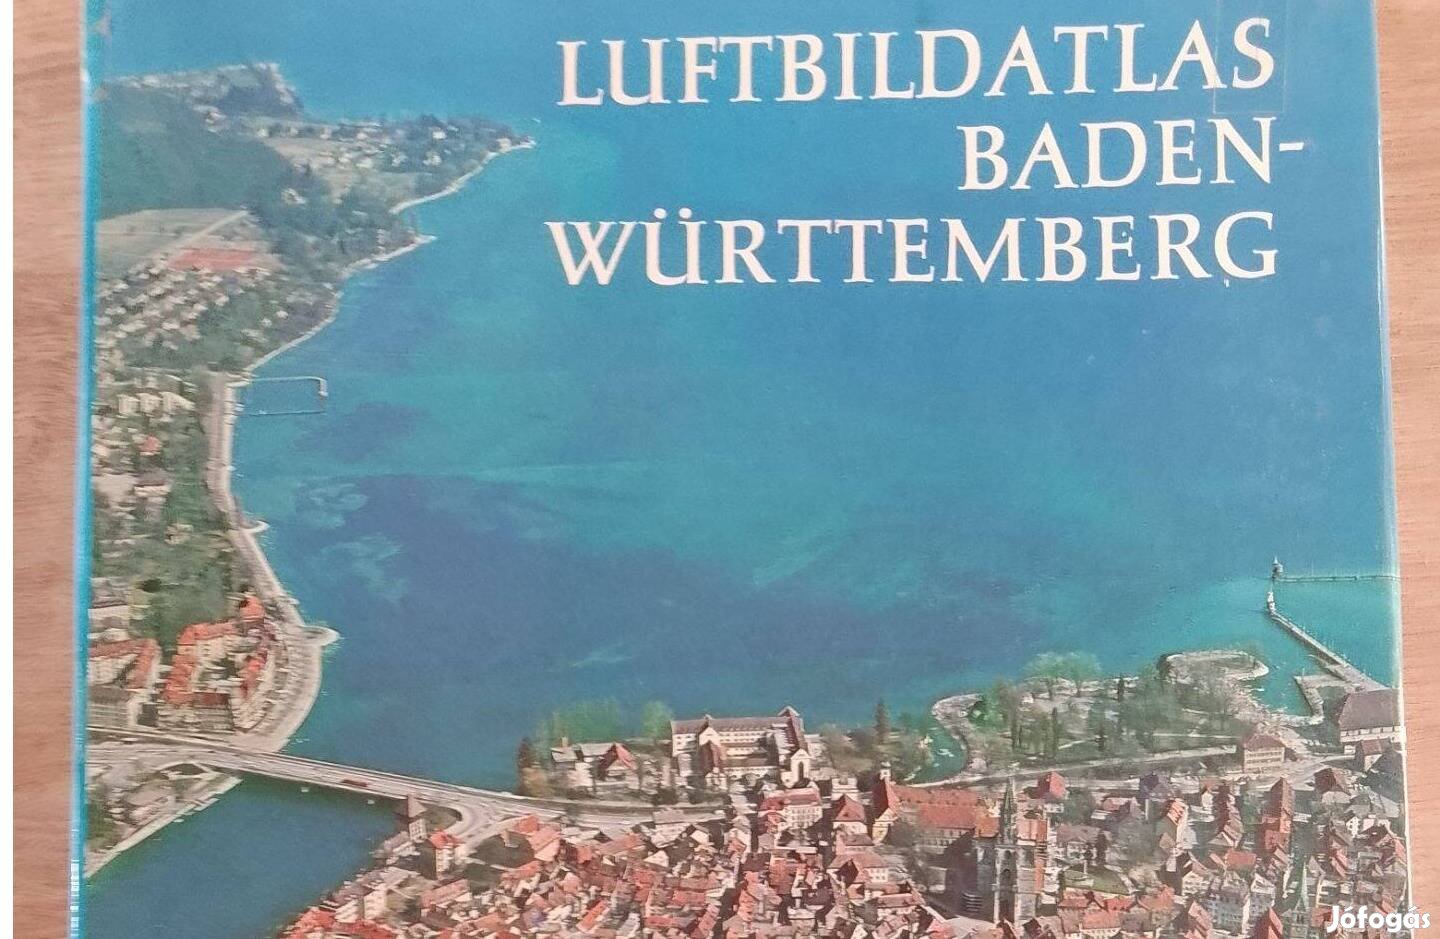 Baden-Württenberg légi atlasza